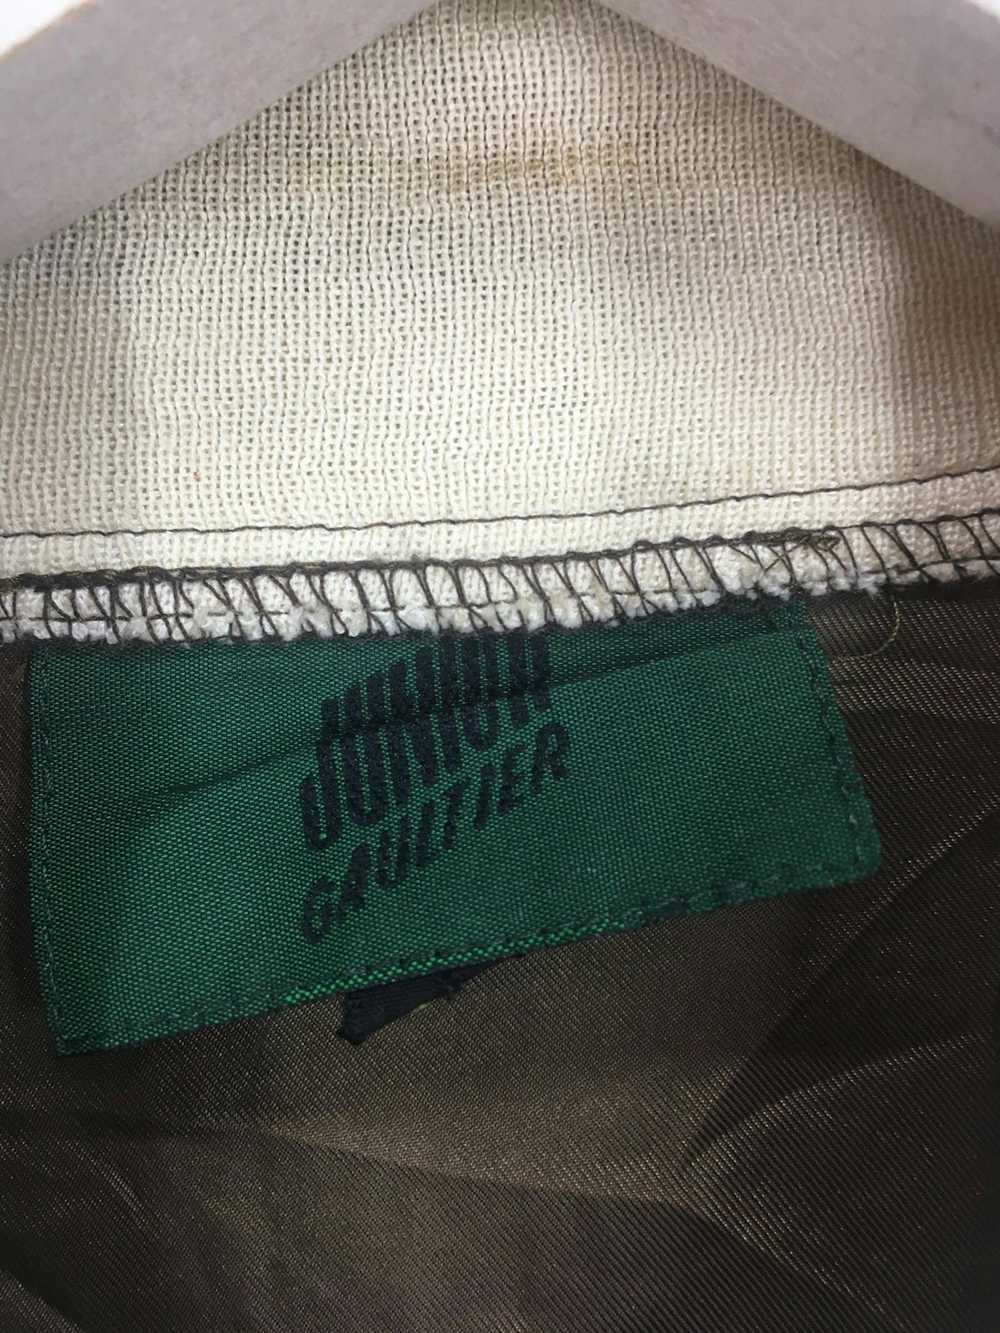 Jean Paul Gaultier JPG Junior Gaultier Jacket - image 4